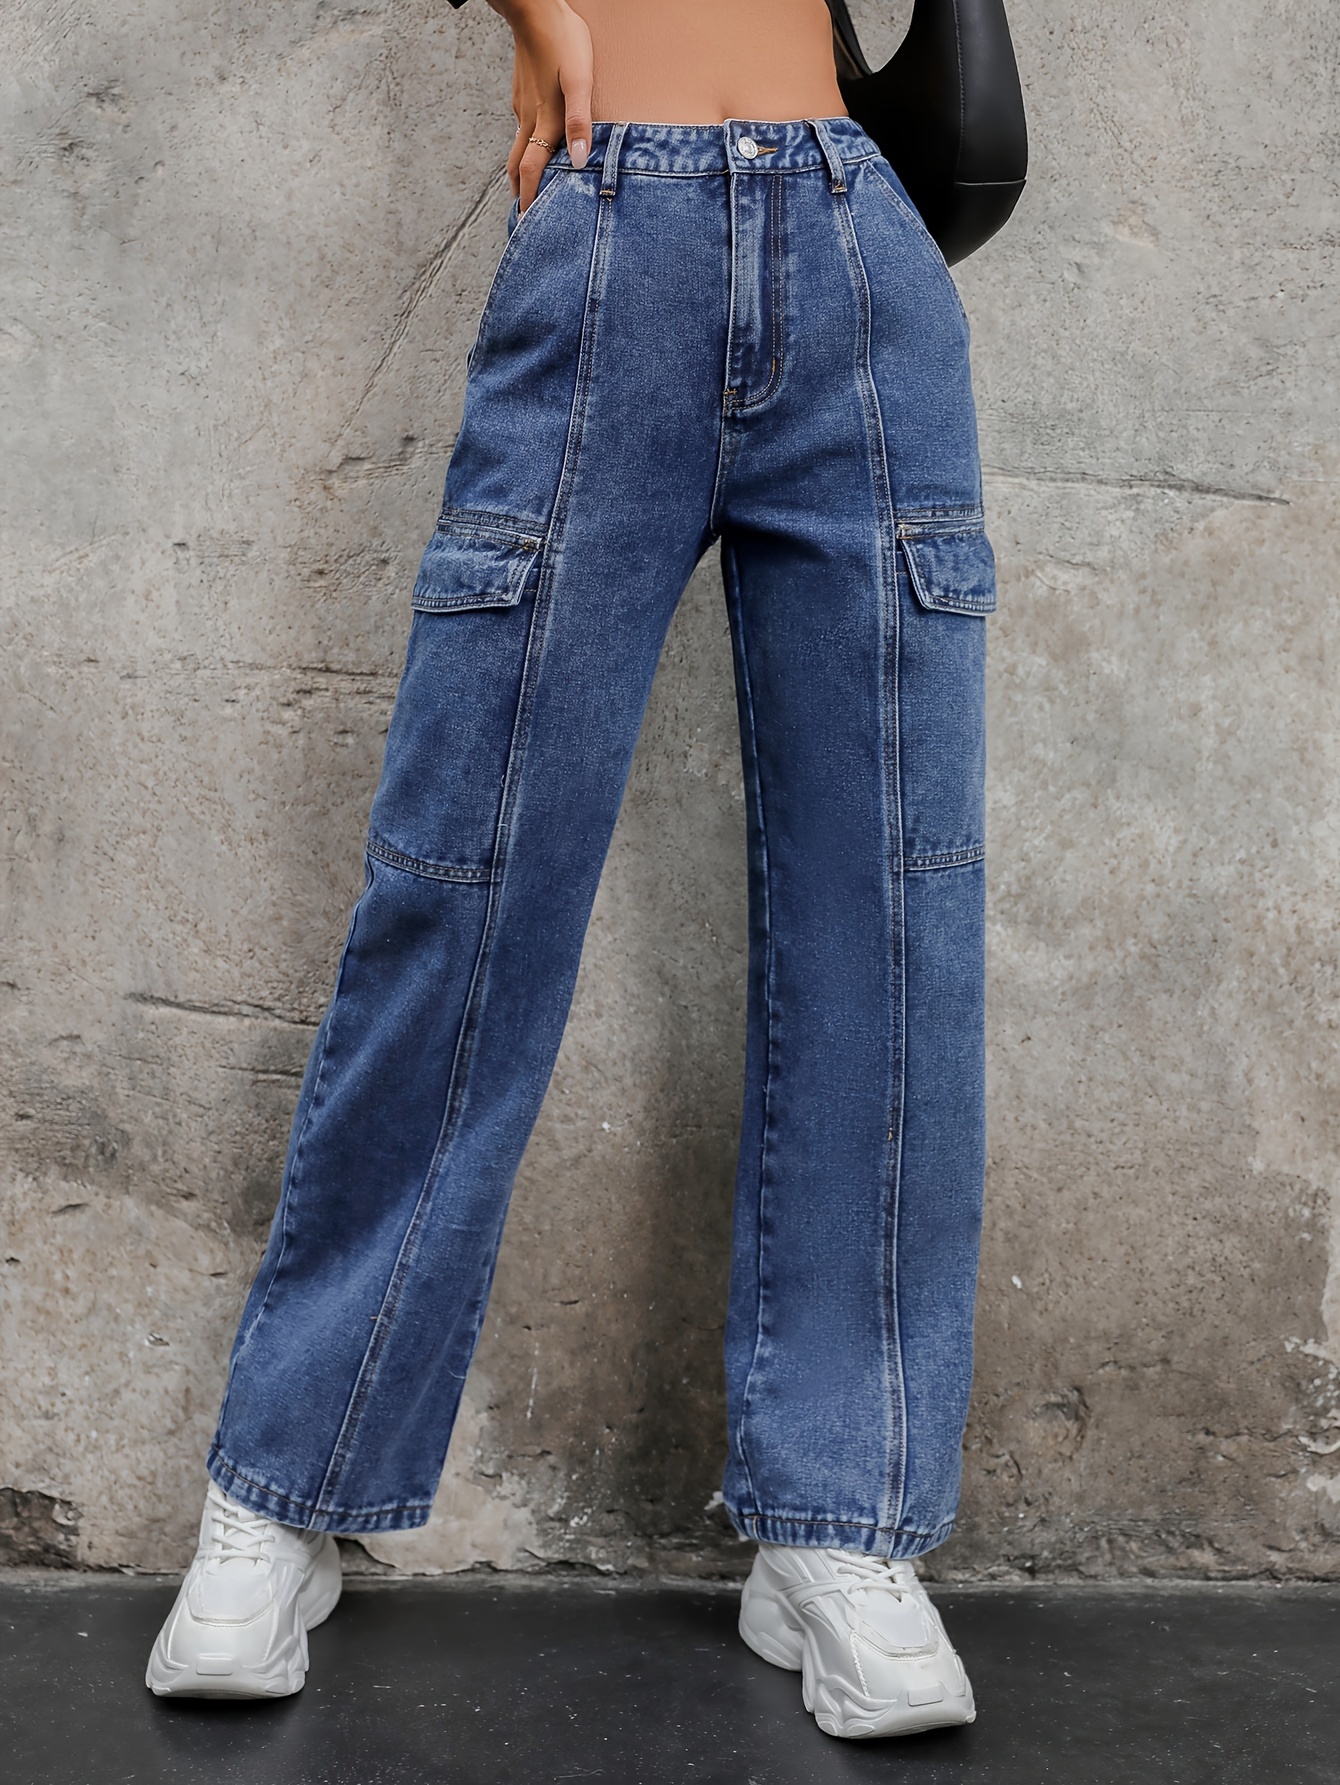 Multi Flap Pocket Solid Color Cargo Jeans, Loose Fit Zipper Button Closure  Casual Wide Leg Denim Pants, Women's Denim Jeans & Clothing